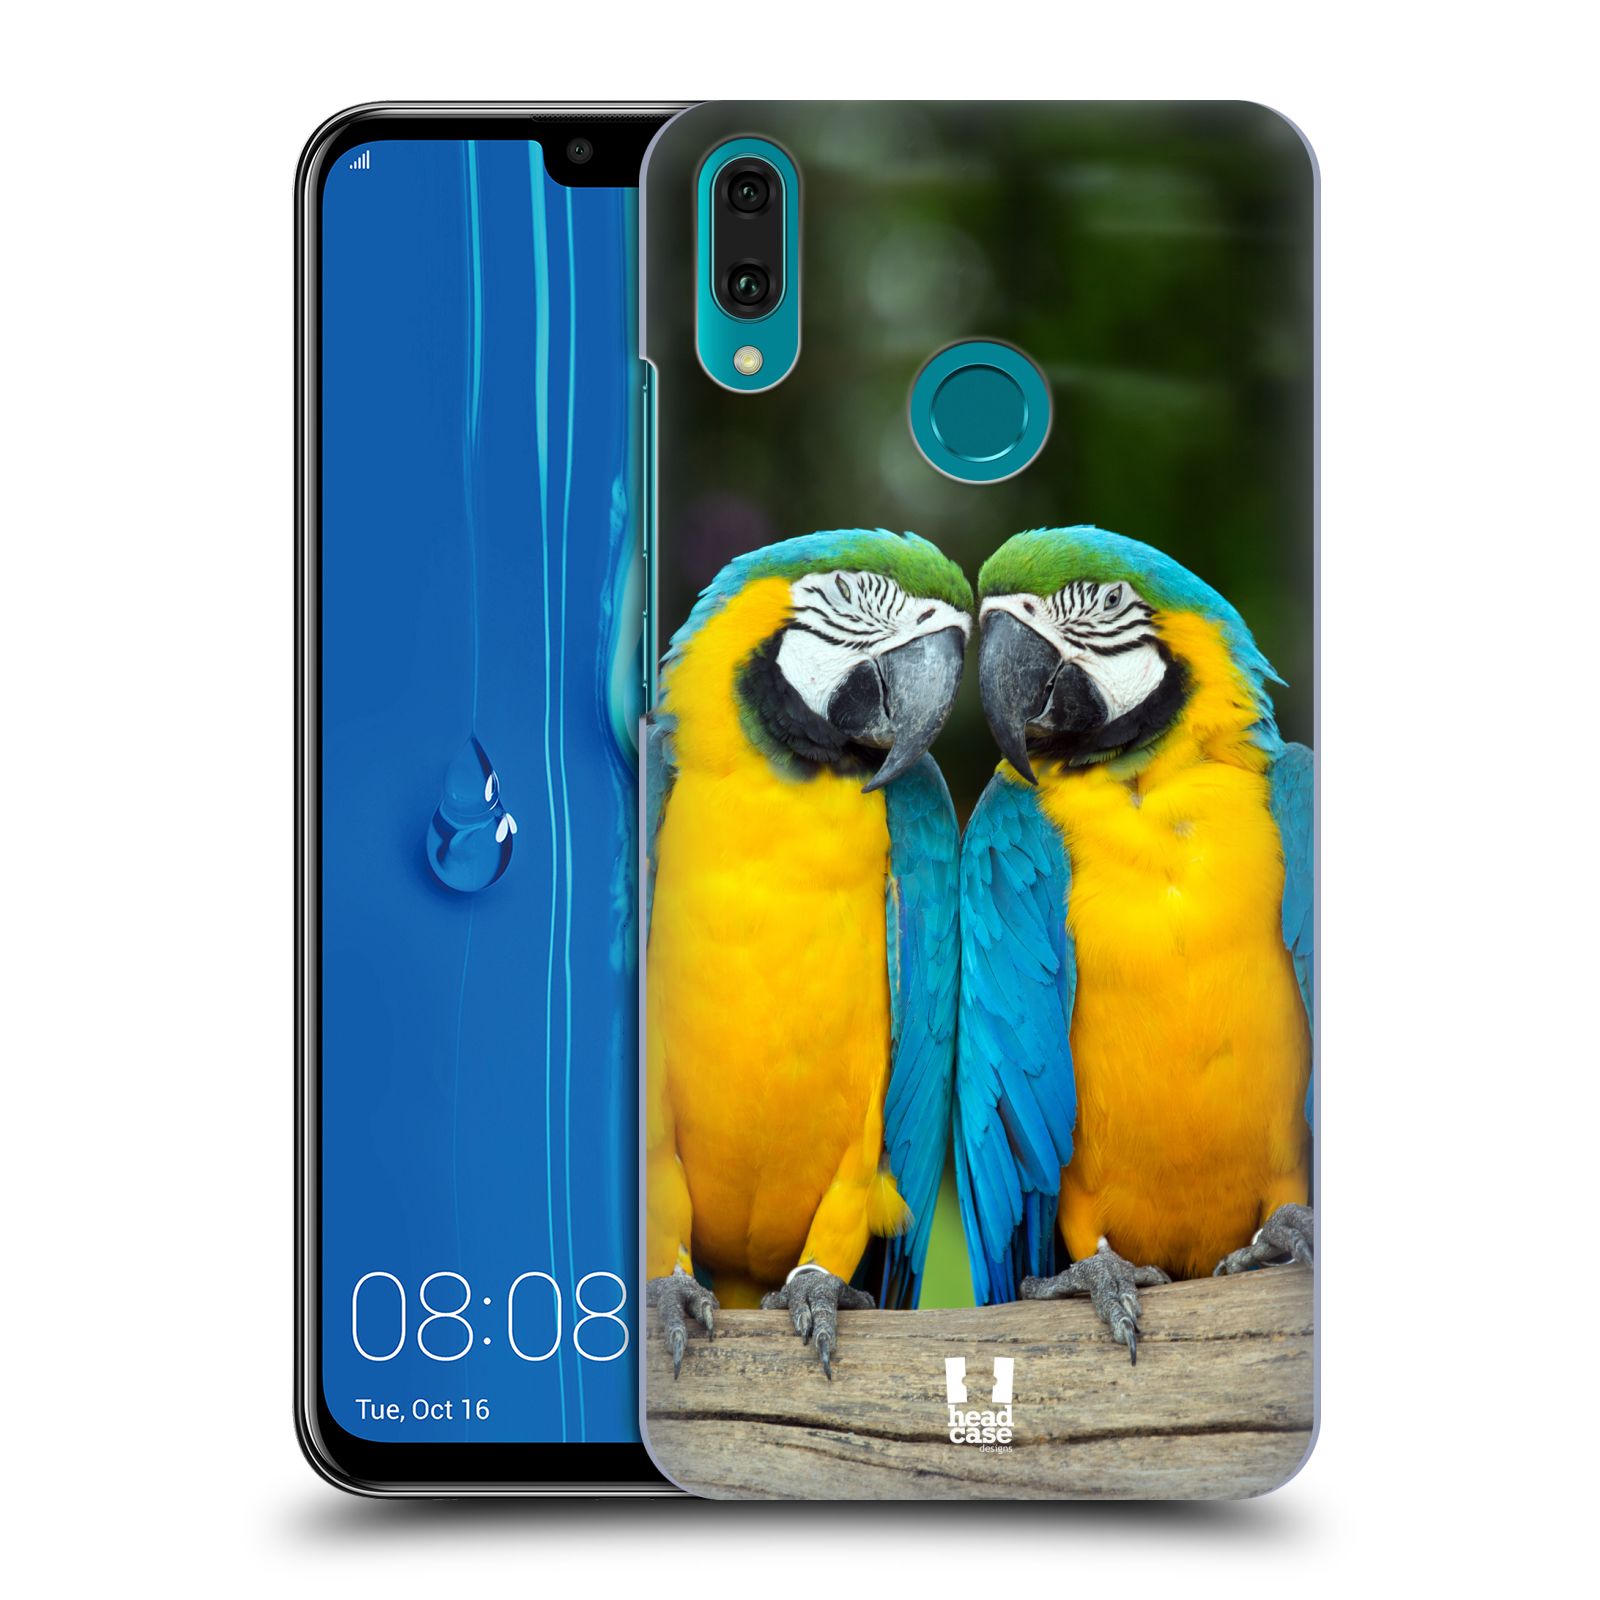 Pouzdro na mobil Huawei Y9 2019 - HEAD CASE - vzor slavná zvířata foto dva papoušci